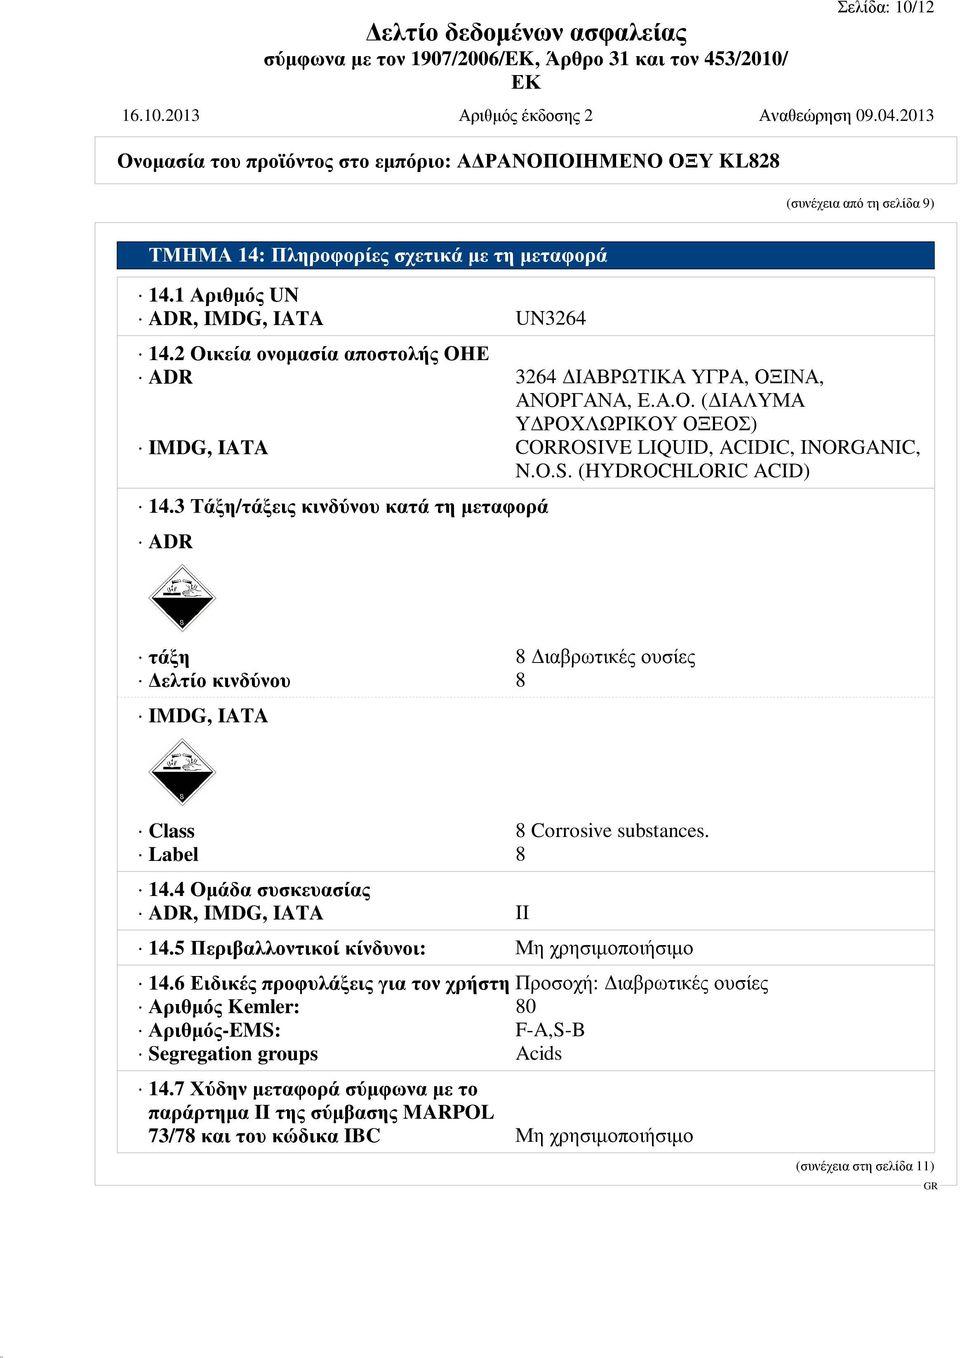 3 Τάξη/τάξεις κινδύνου κατά τη μεταφορά ADR τάξη 8 Διαβρωτικές ουσίες Δελτίο κινδύνου 8 IMDG, IATA Class 8 Corrosive substances. Label 8 14.4 Ομάδα συσκευασίας ADR, IMDG, IATA II 14.